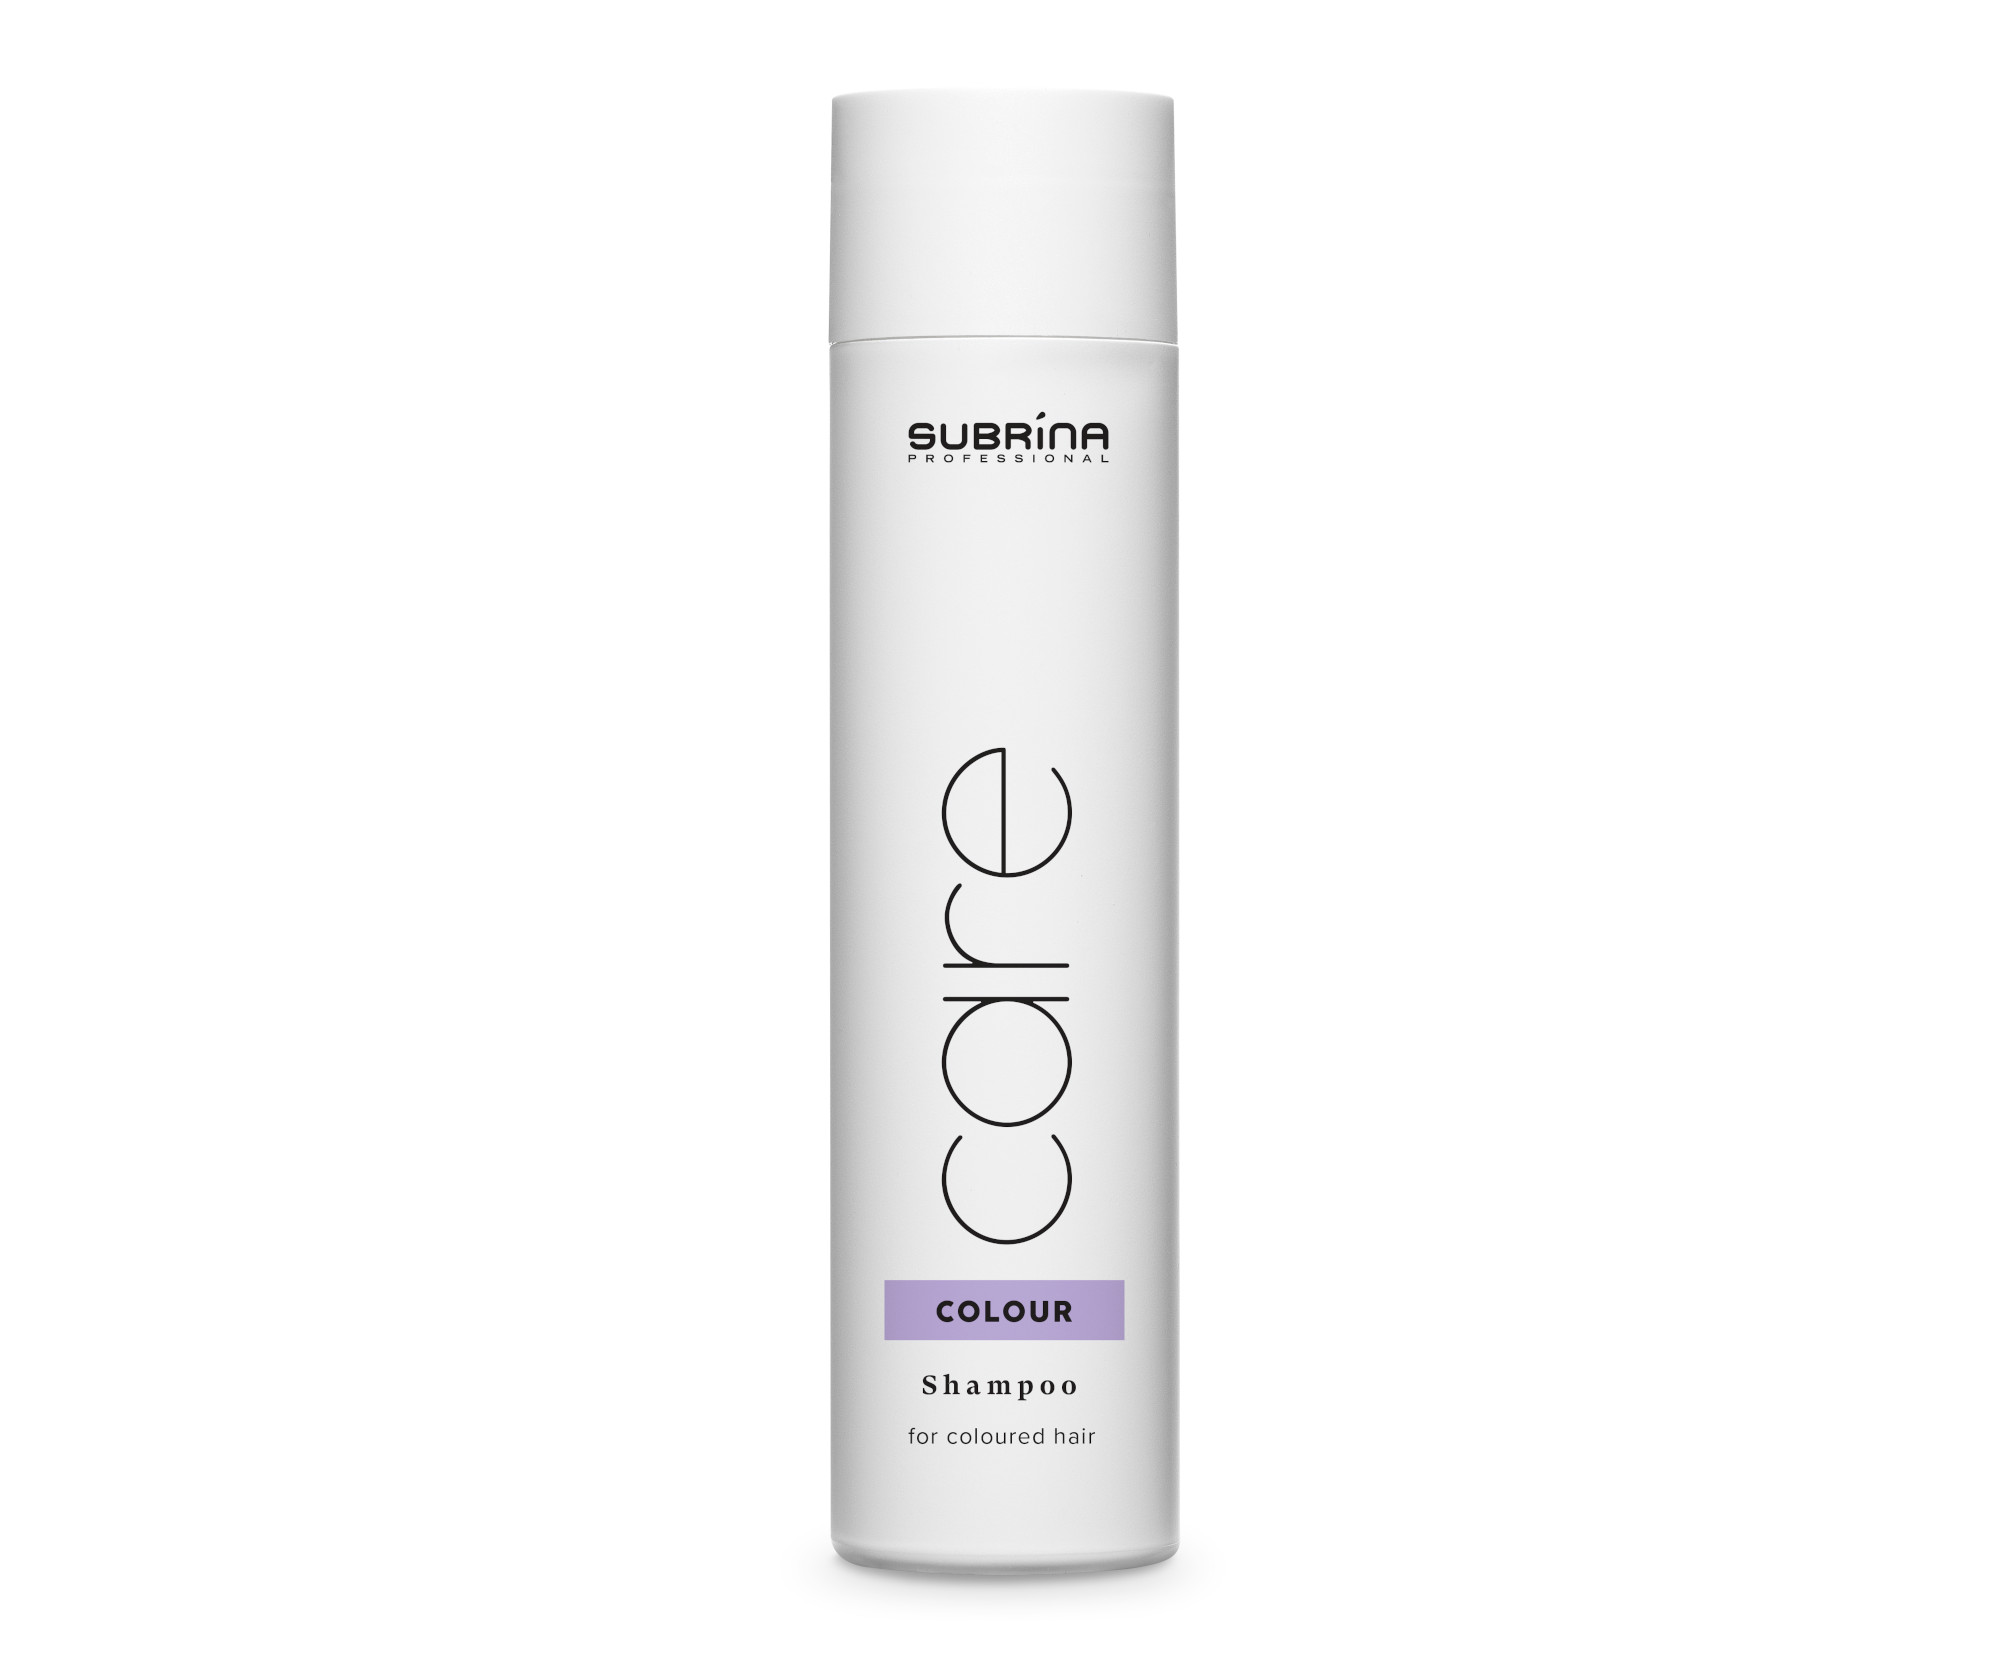 Šampon pro barvené vlasy Subrina Professional Care Colour Shampoo - 250 ml (060262) + dárek zdarma